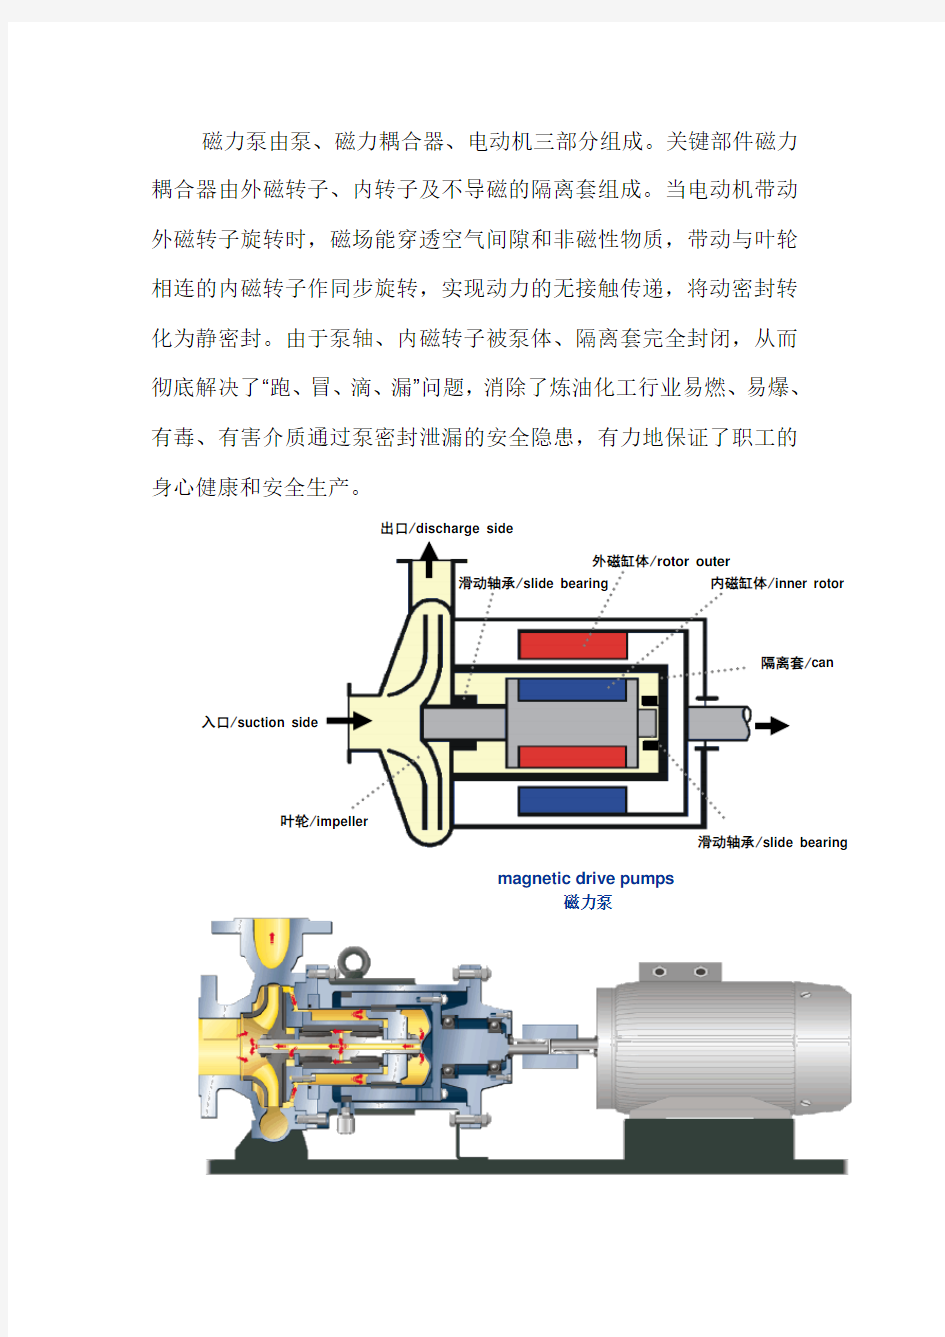 磁力驱动泵基本结构及工作原理